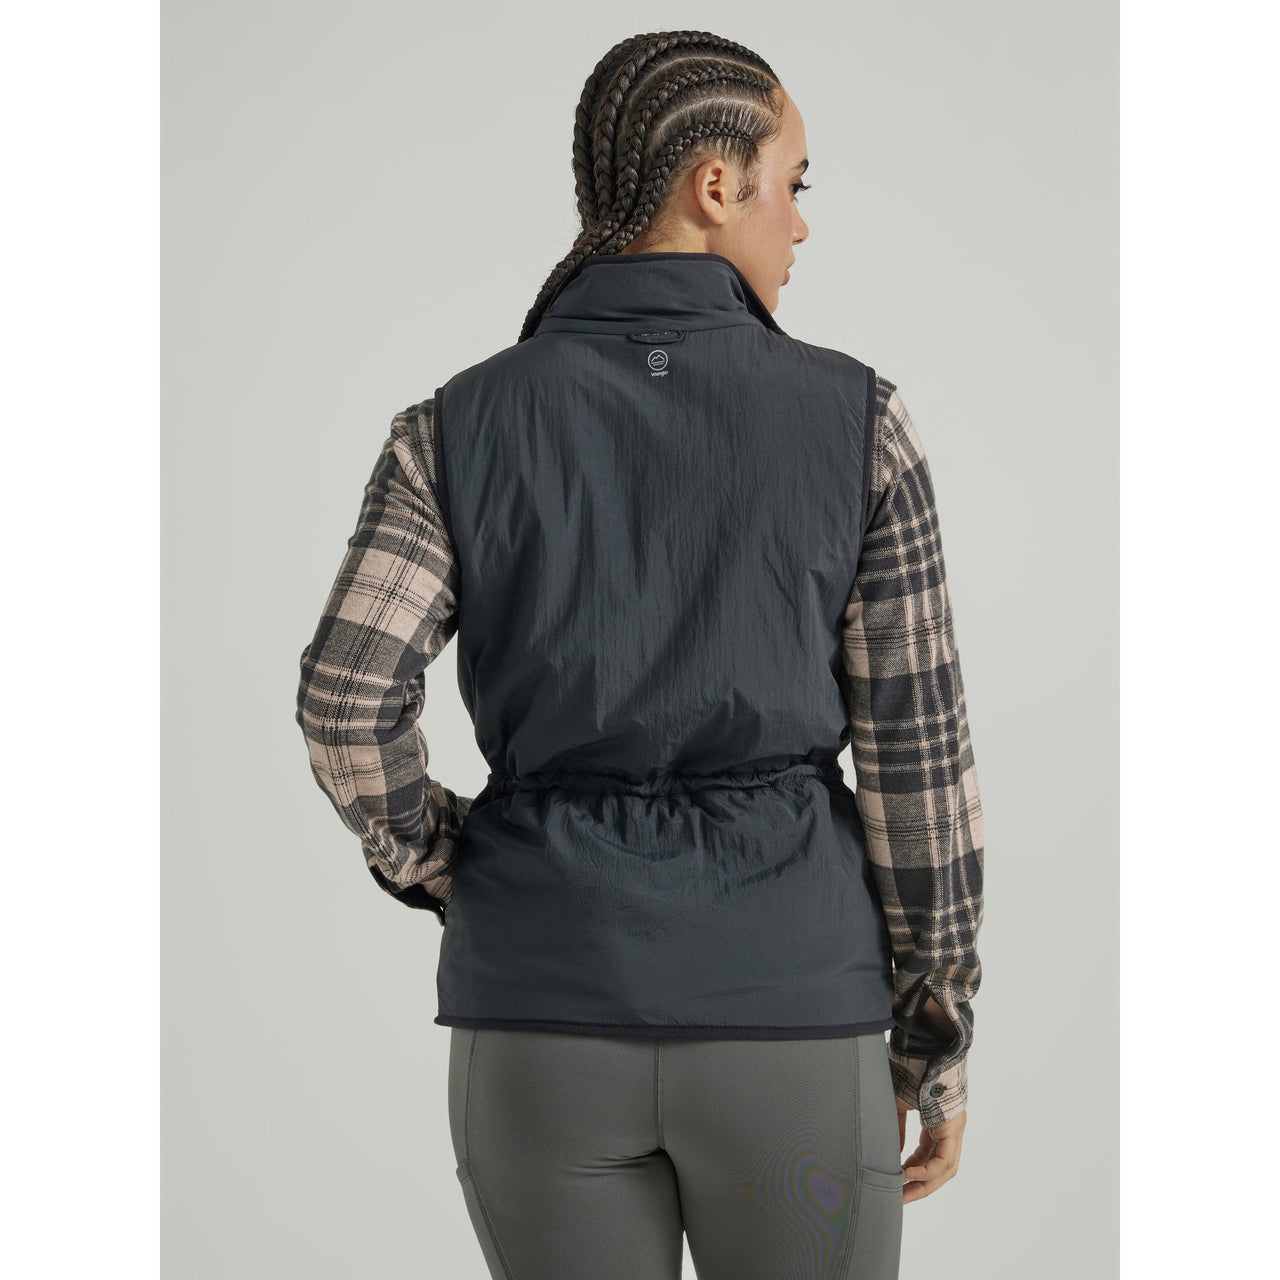 Wrangler Women's ATG Climate Reversible Vest - Black